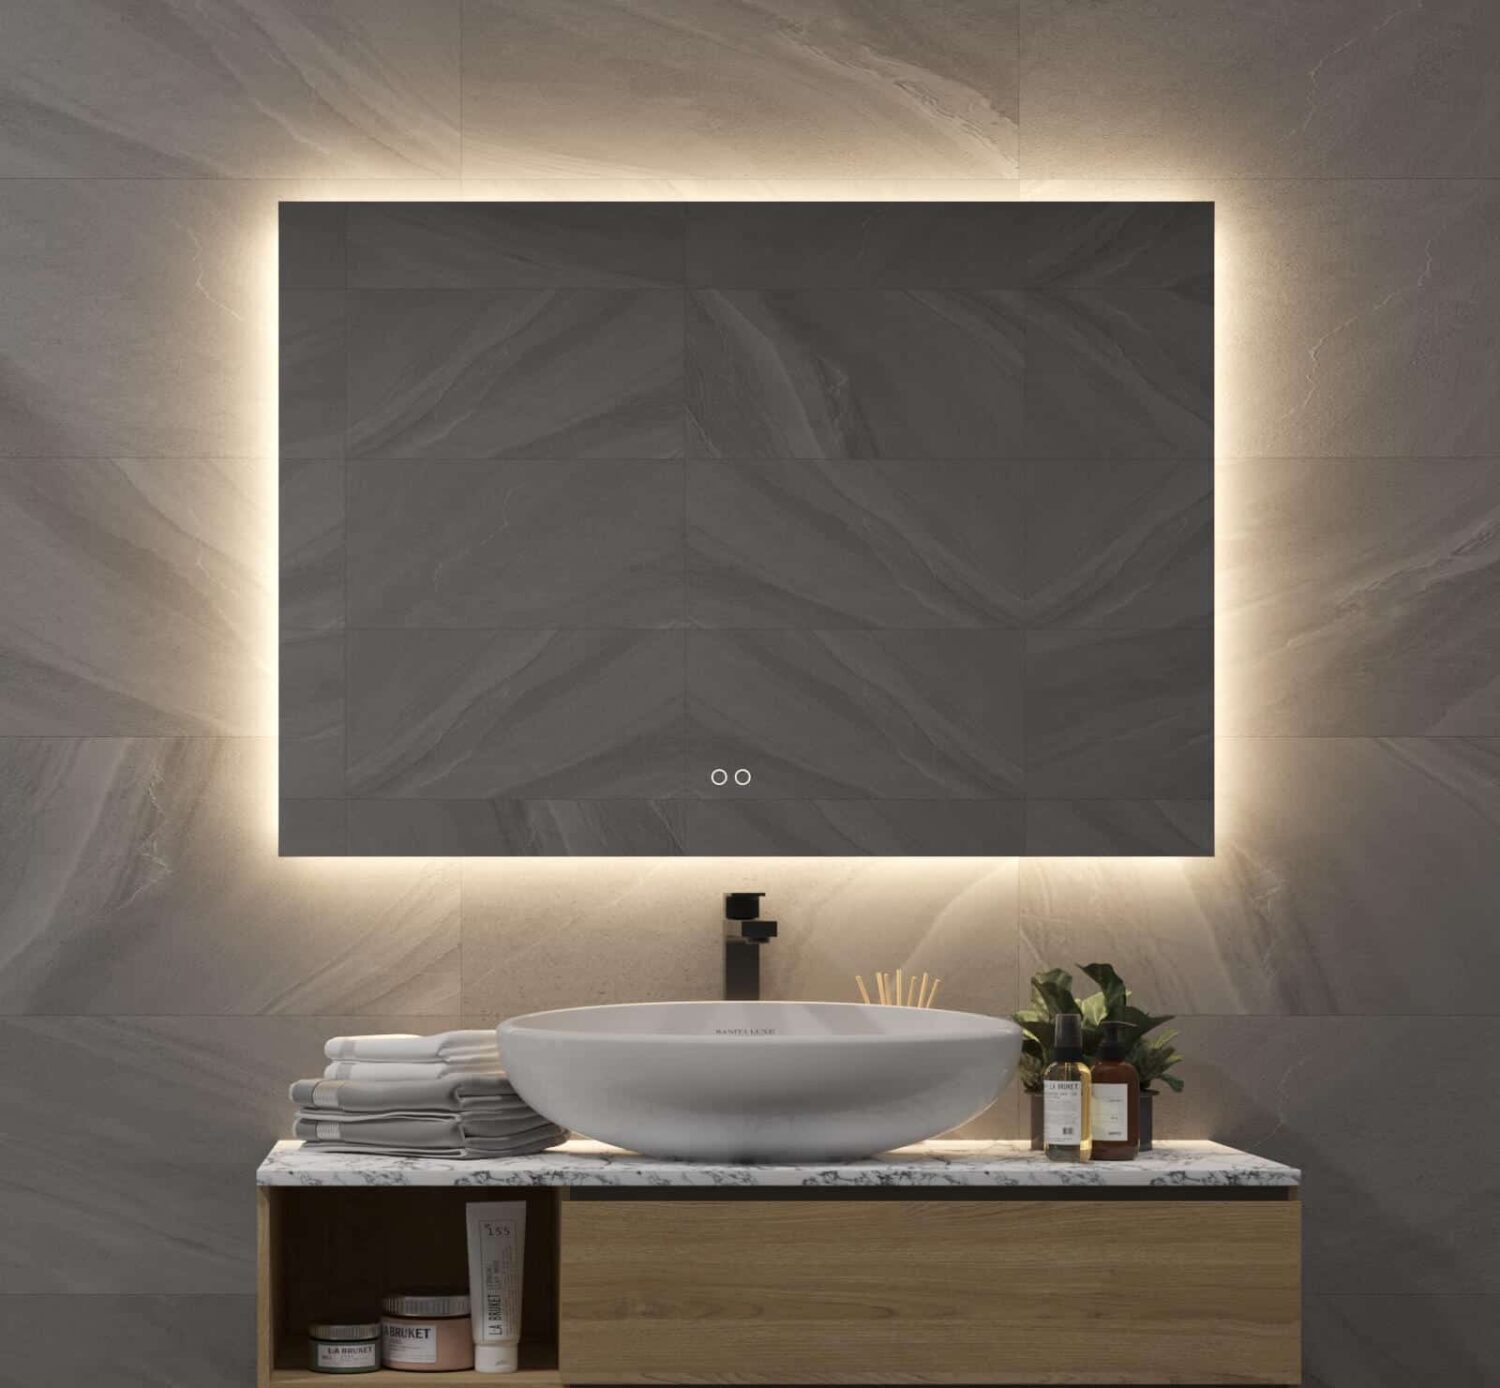 Badkamerspiegel met indirecte verlichting, verwarming, instelbare lichtkleur en dimfunctie cm - Designspiegels